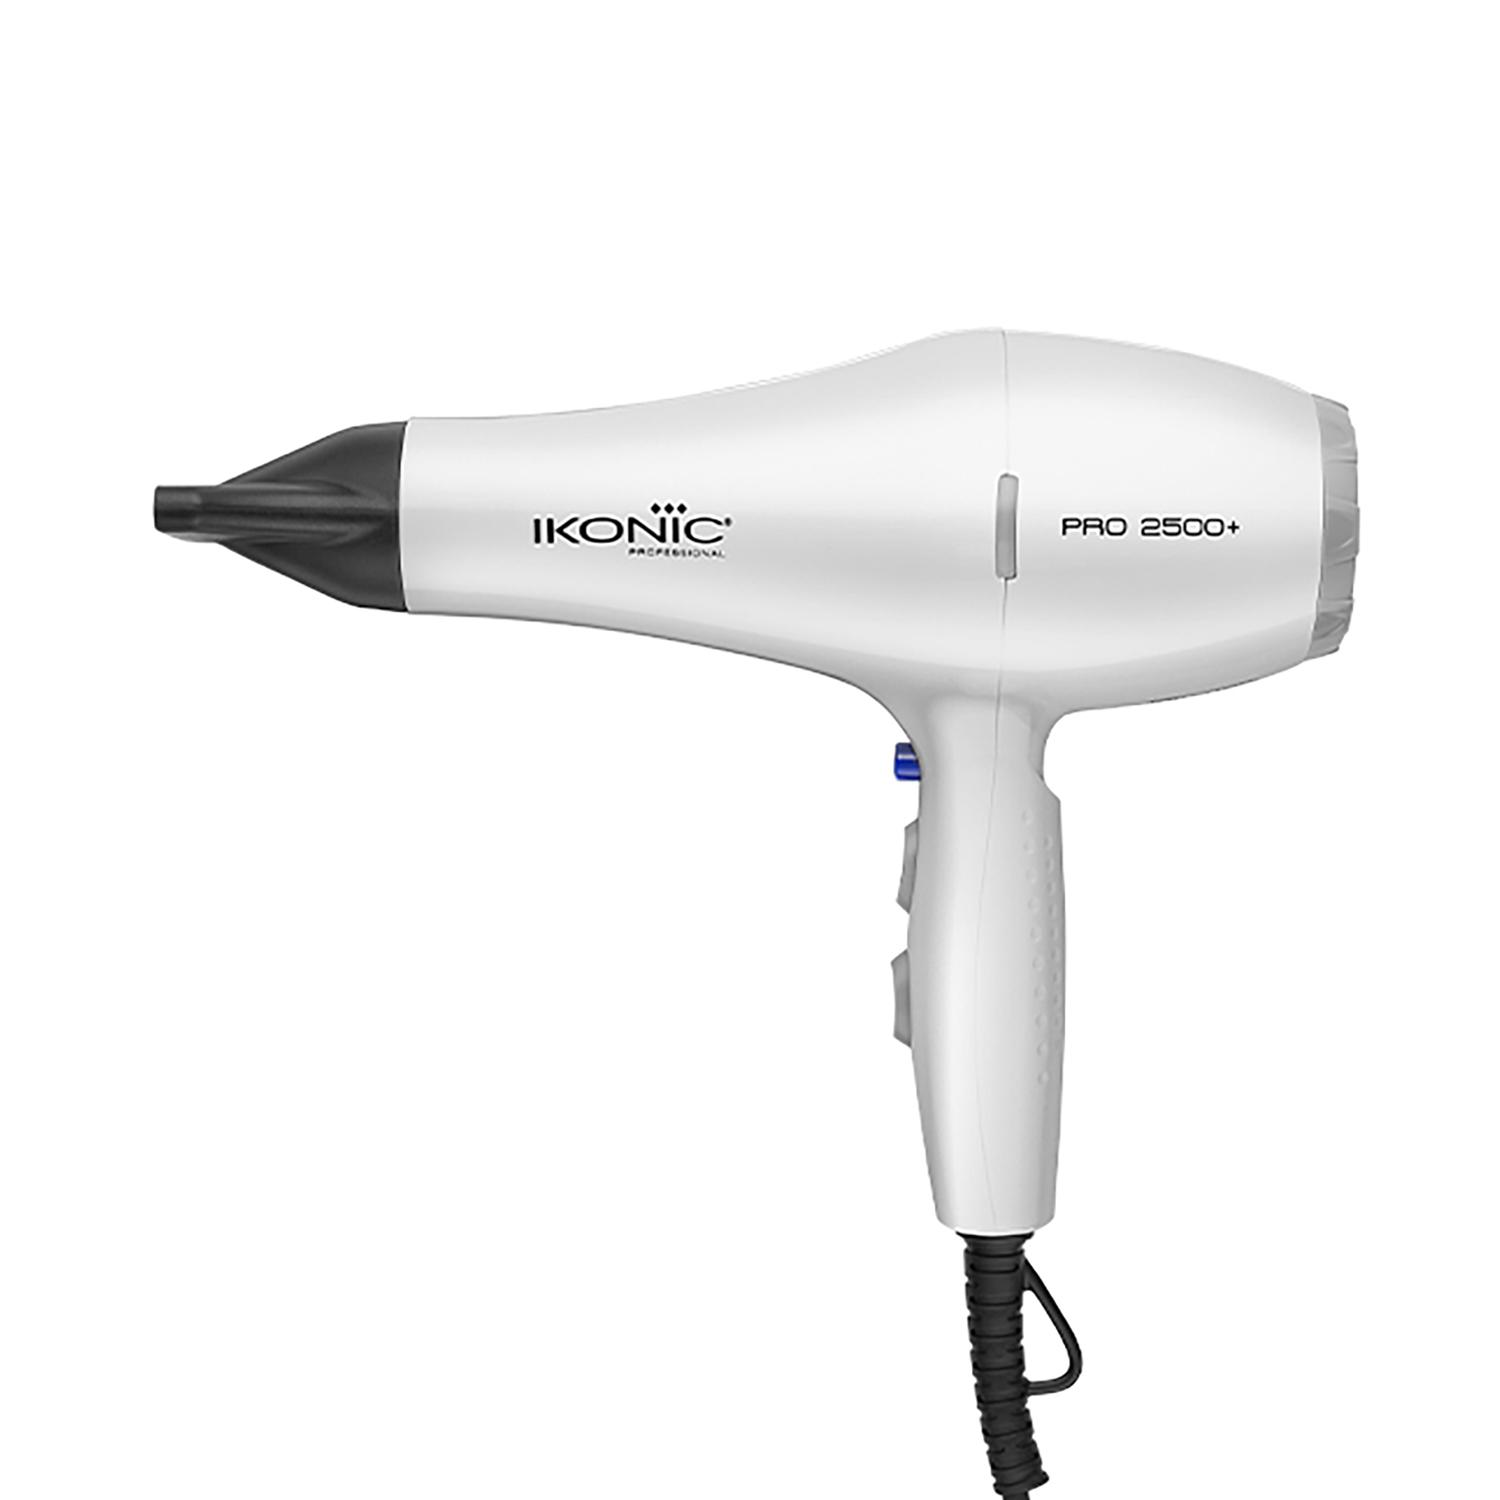 Ikonic Professional | Ikonic Professional 2500+ Pro Hair Dryer (White)